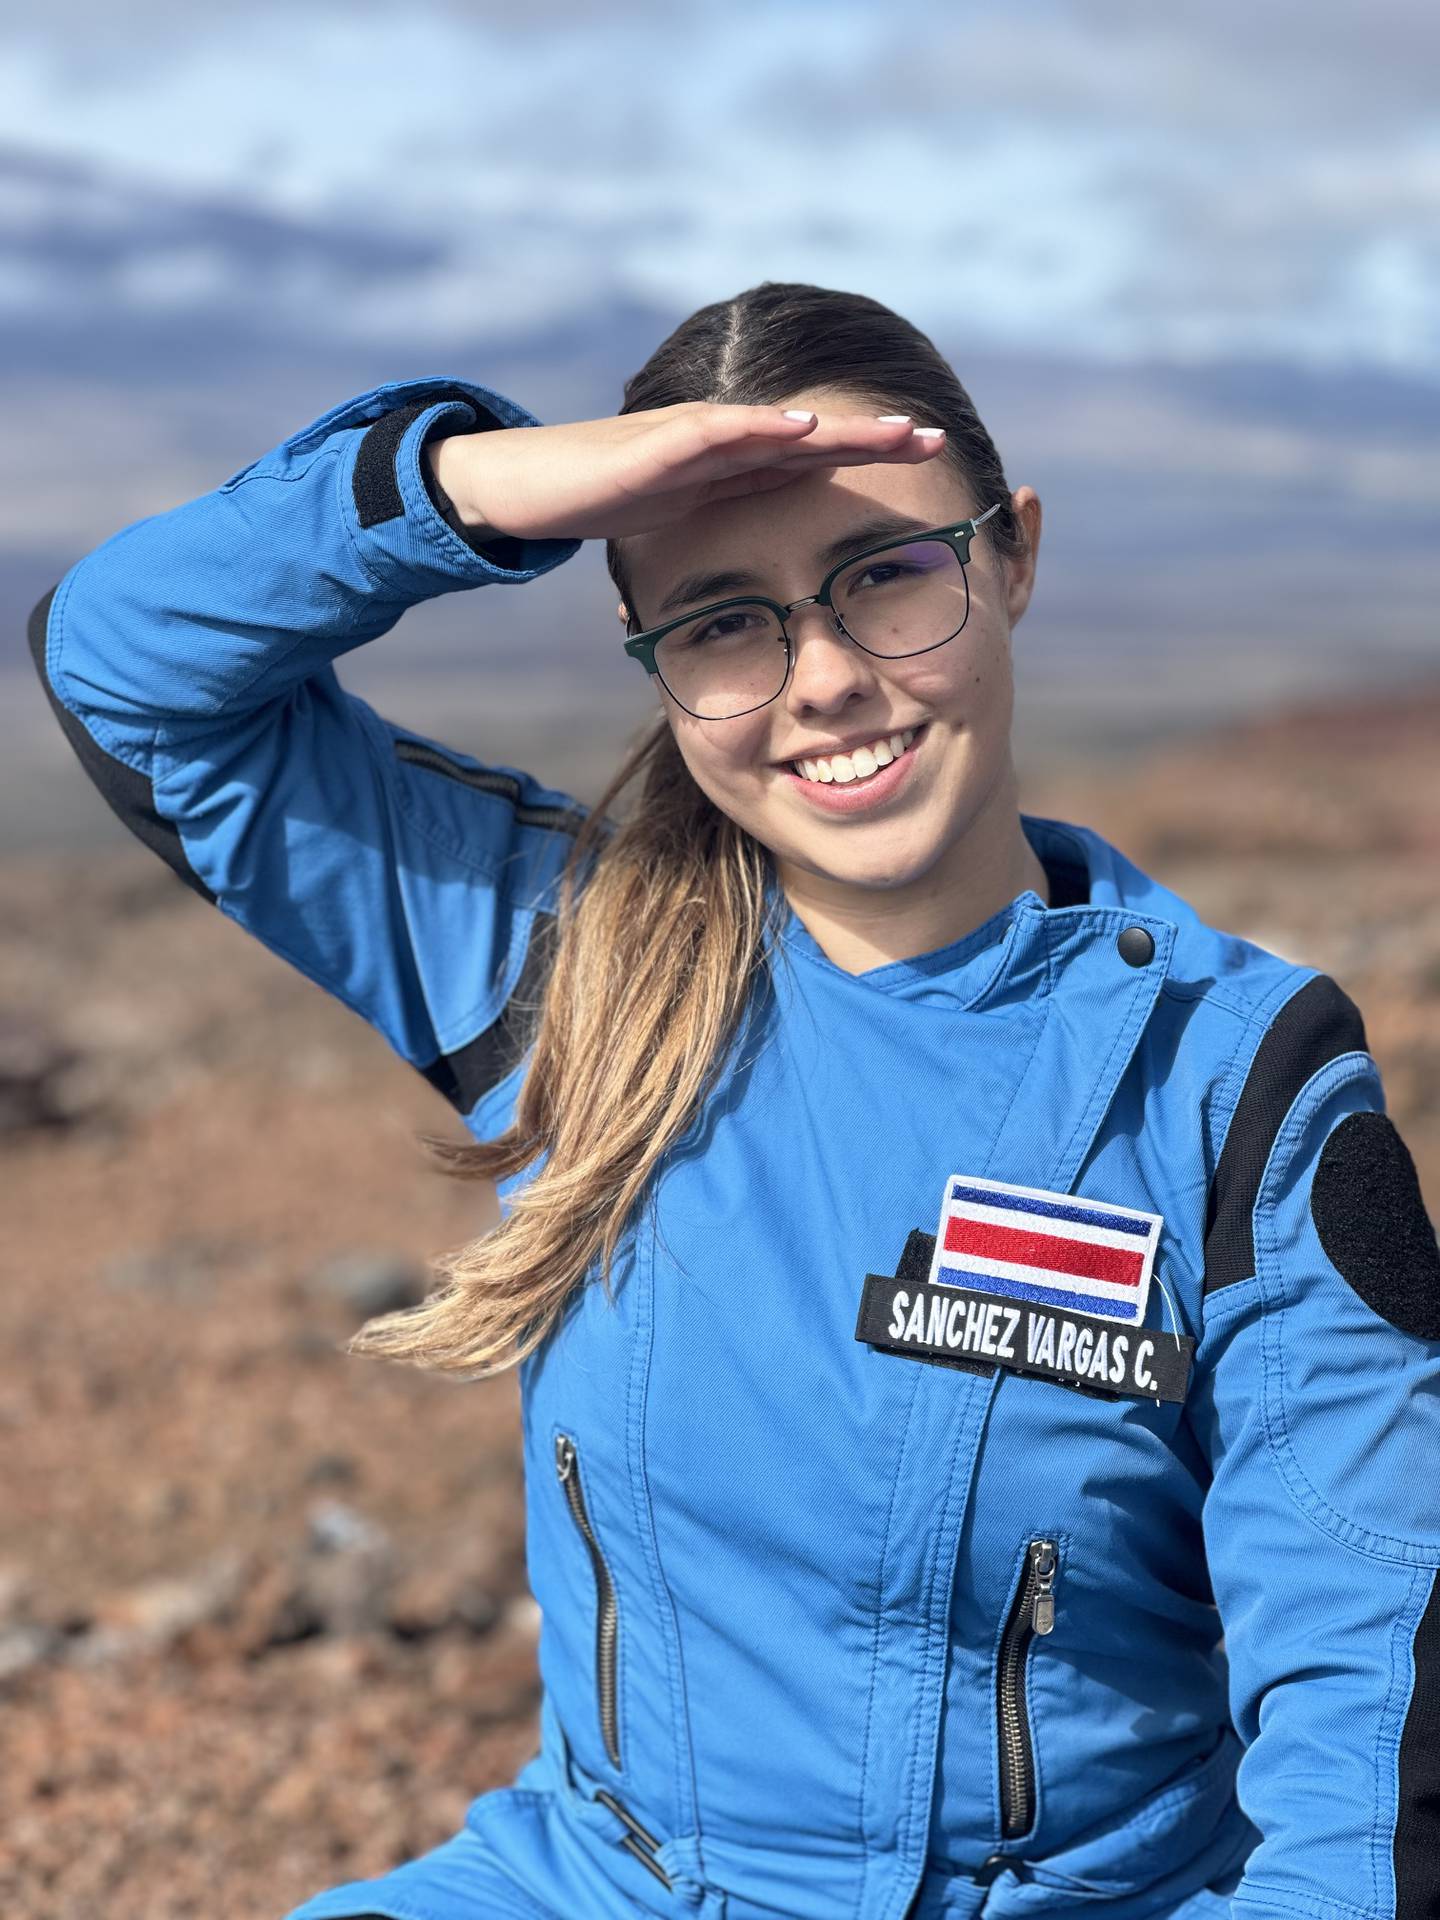 Catalina Sánchez Vargas también se formó como astronauta análoga.

Fotografía: Cortesía